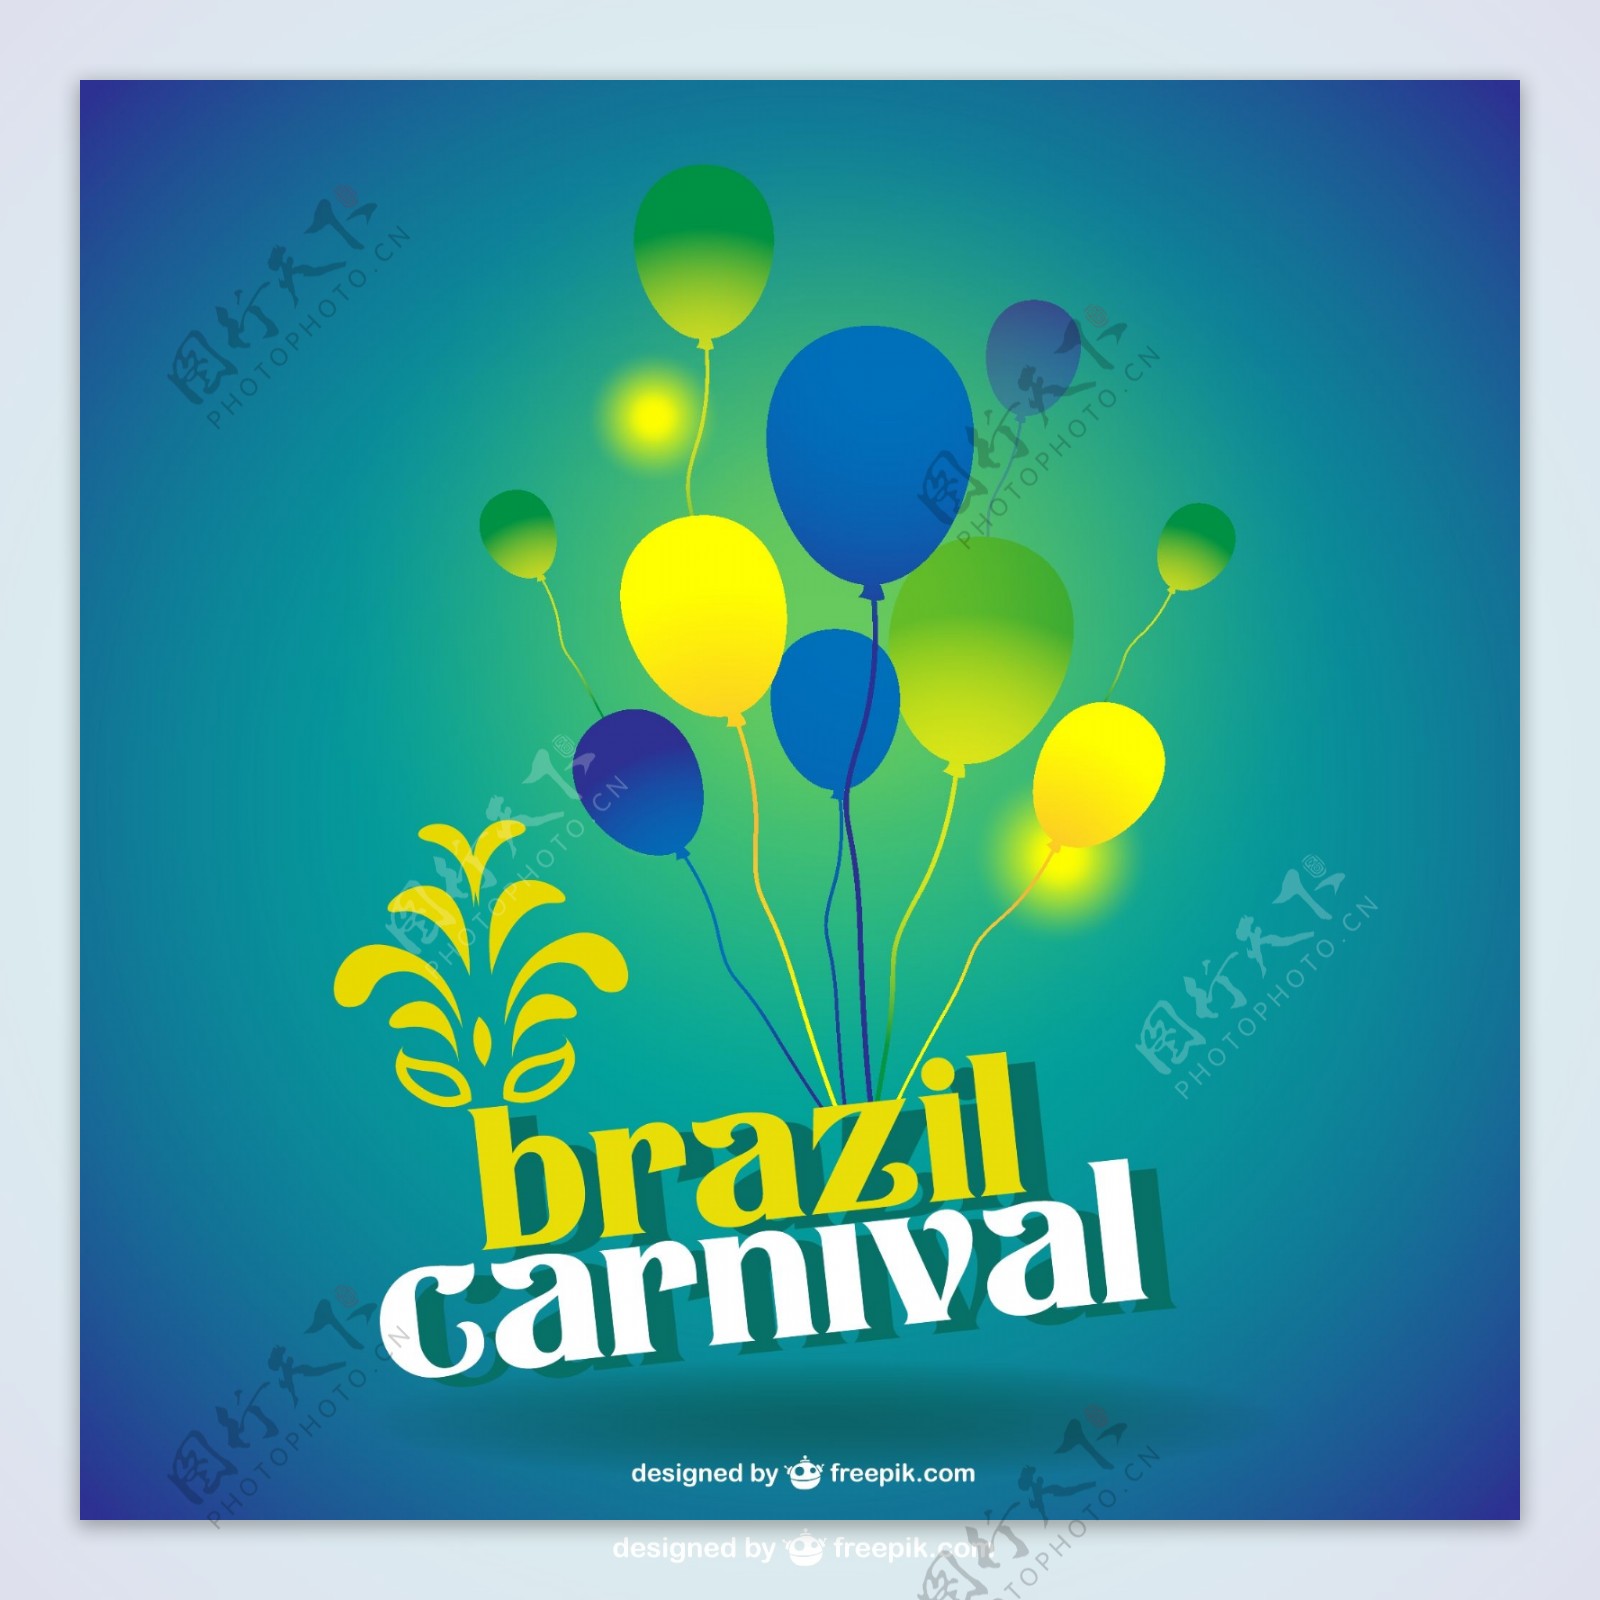 巴西狂欢节气球素材